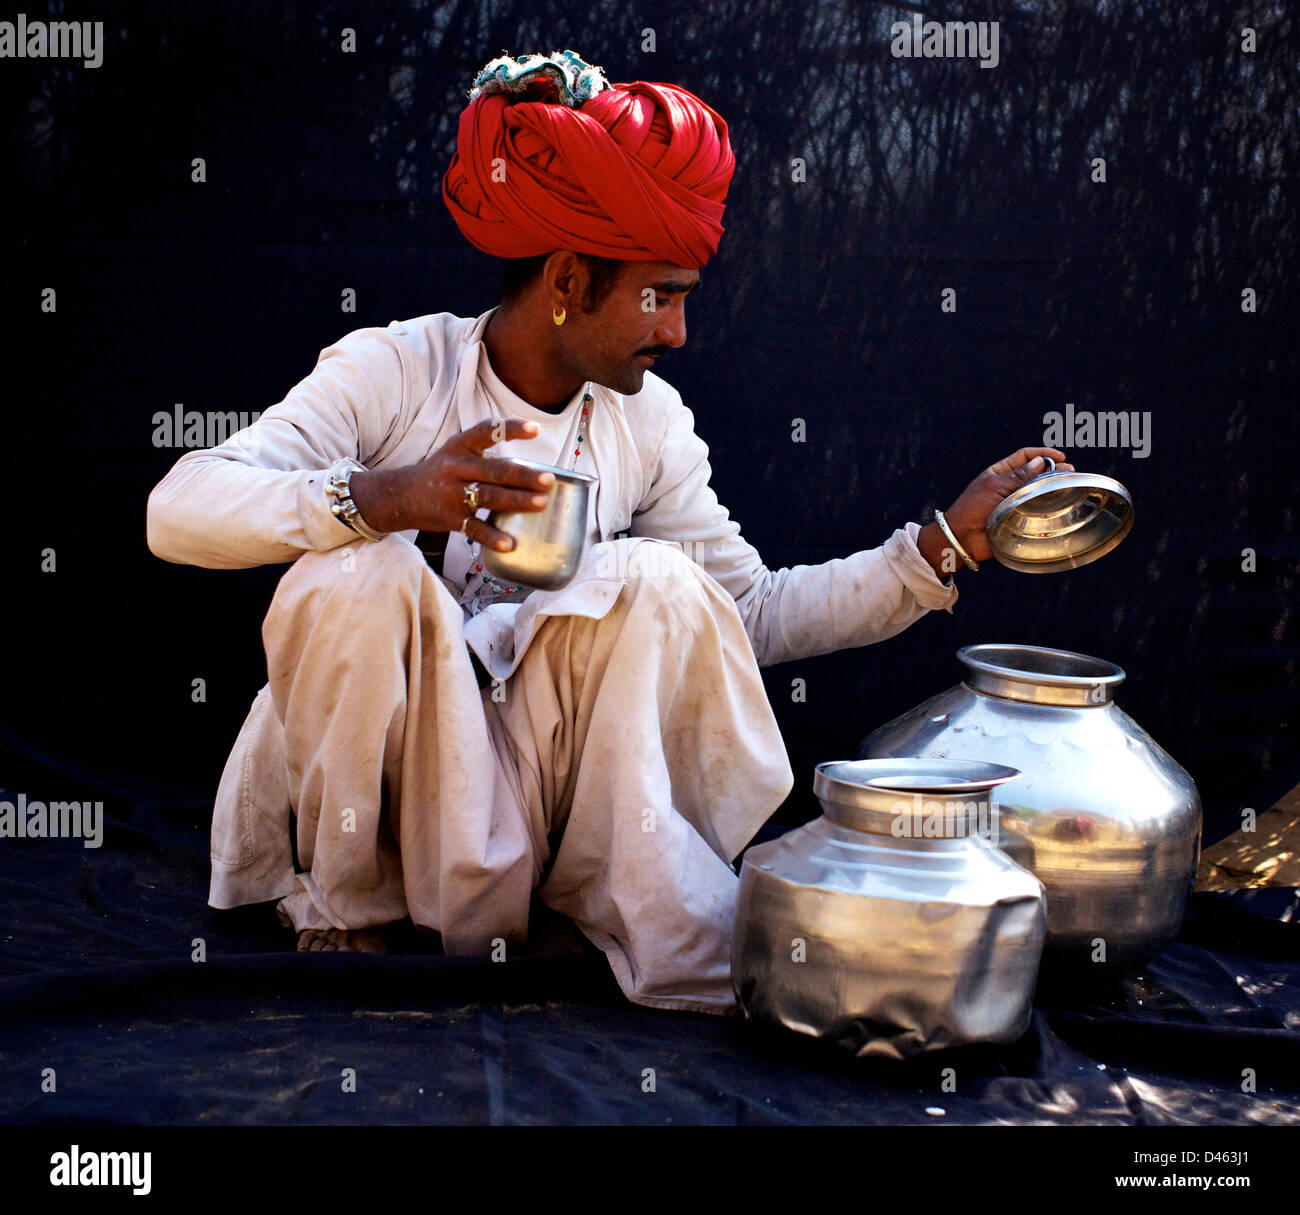 Rabari man. Stock Photo